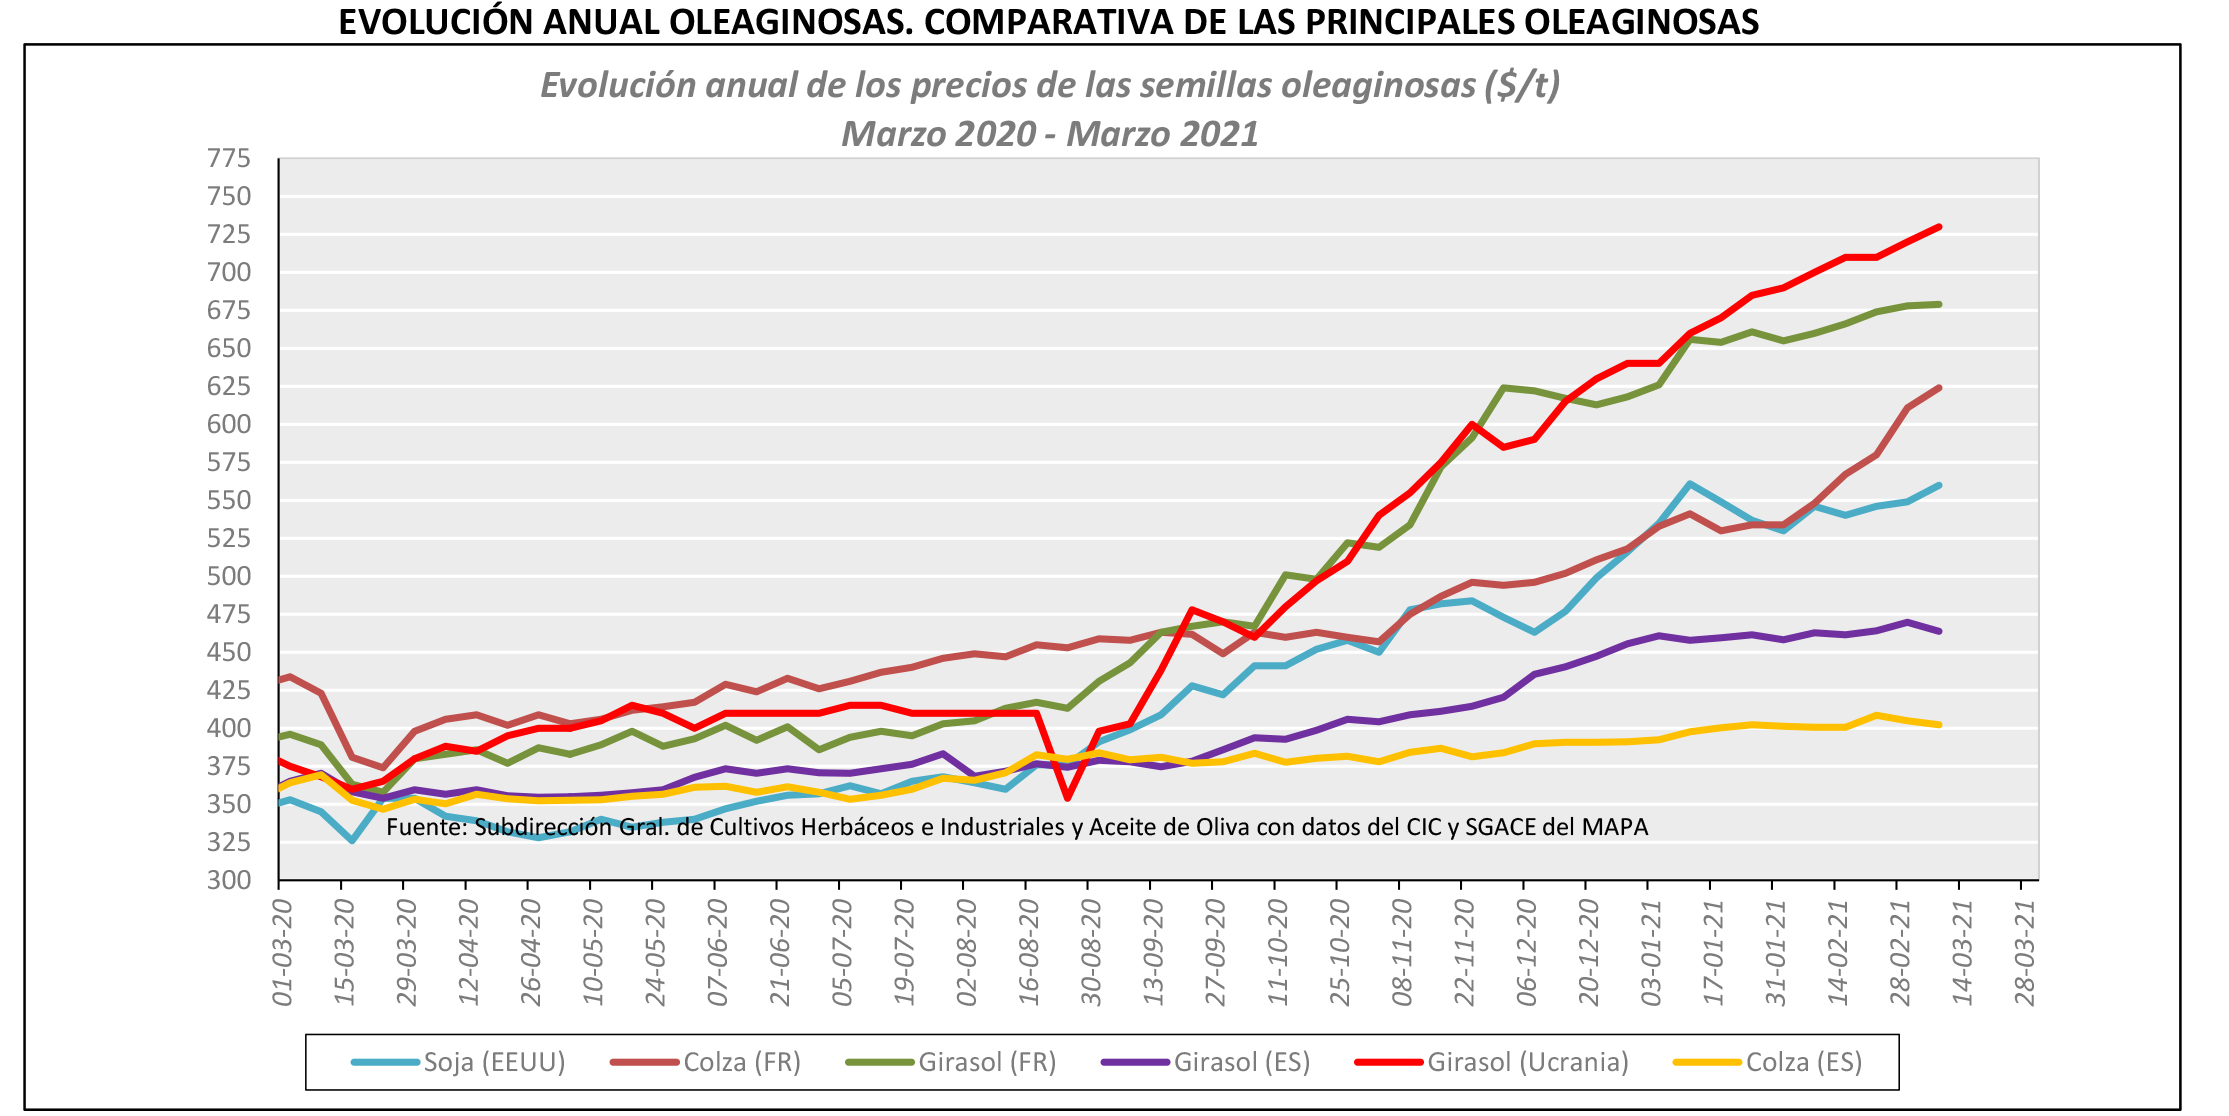 El precio del girasol se dispara en el mundo durante el último año, pero en  España sube mucho menos que en otros países - Grandes cultivos